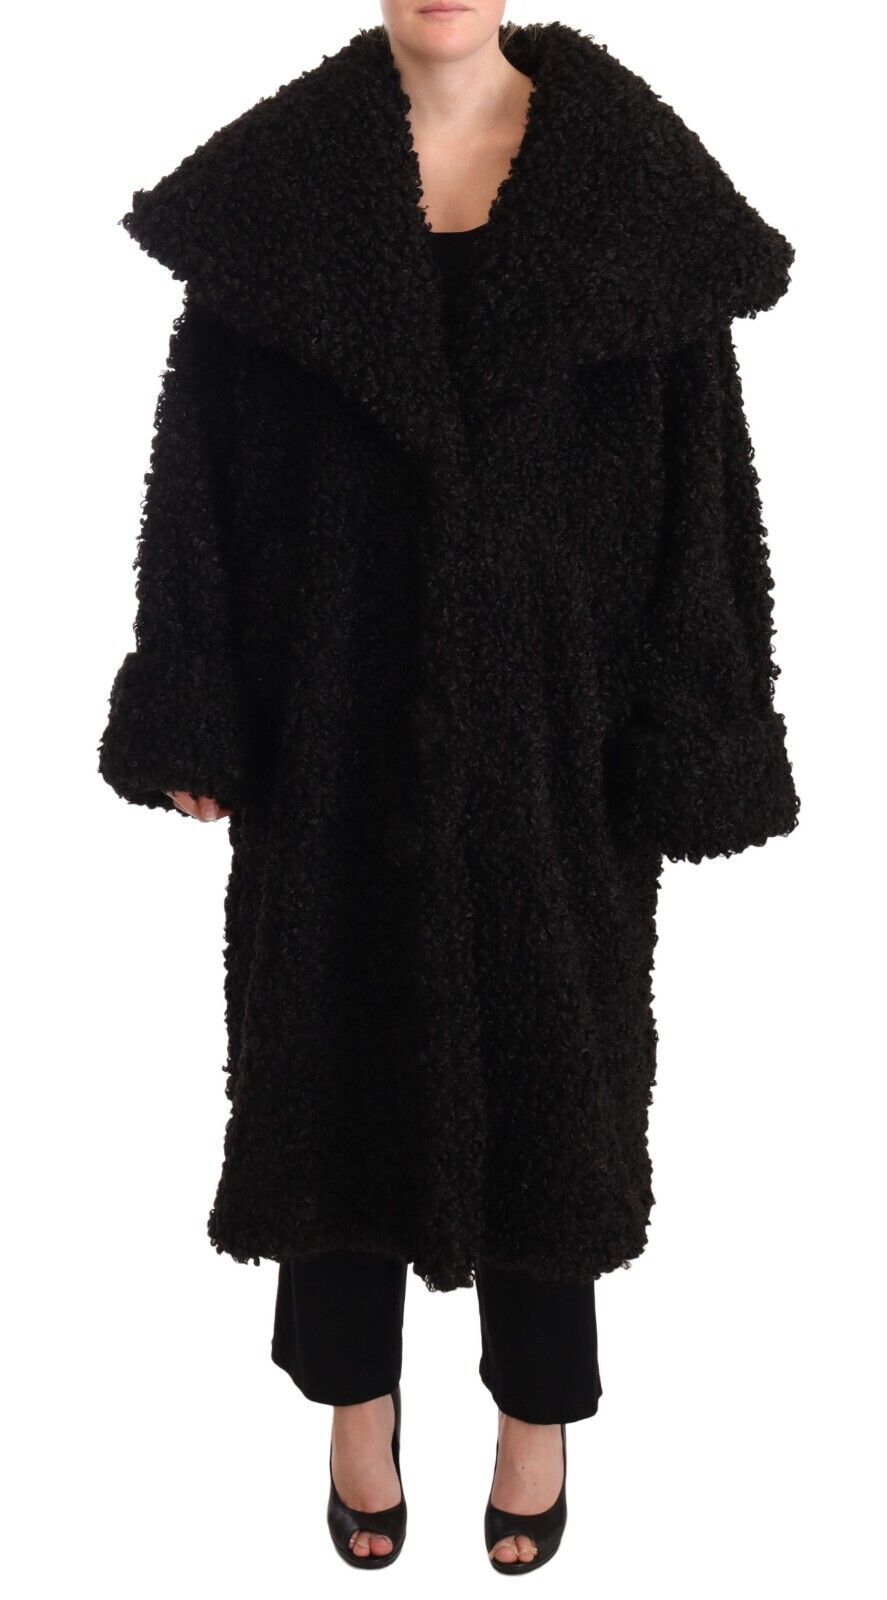 Elegant Black Fur Cape Trench Coat